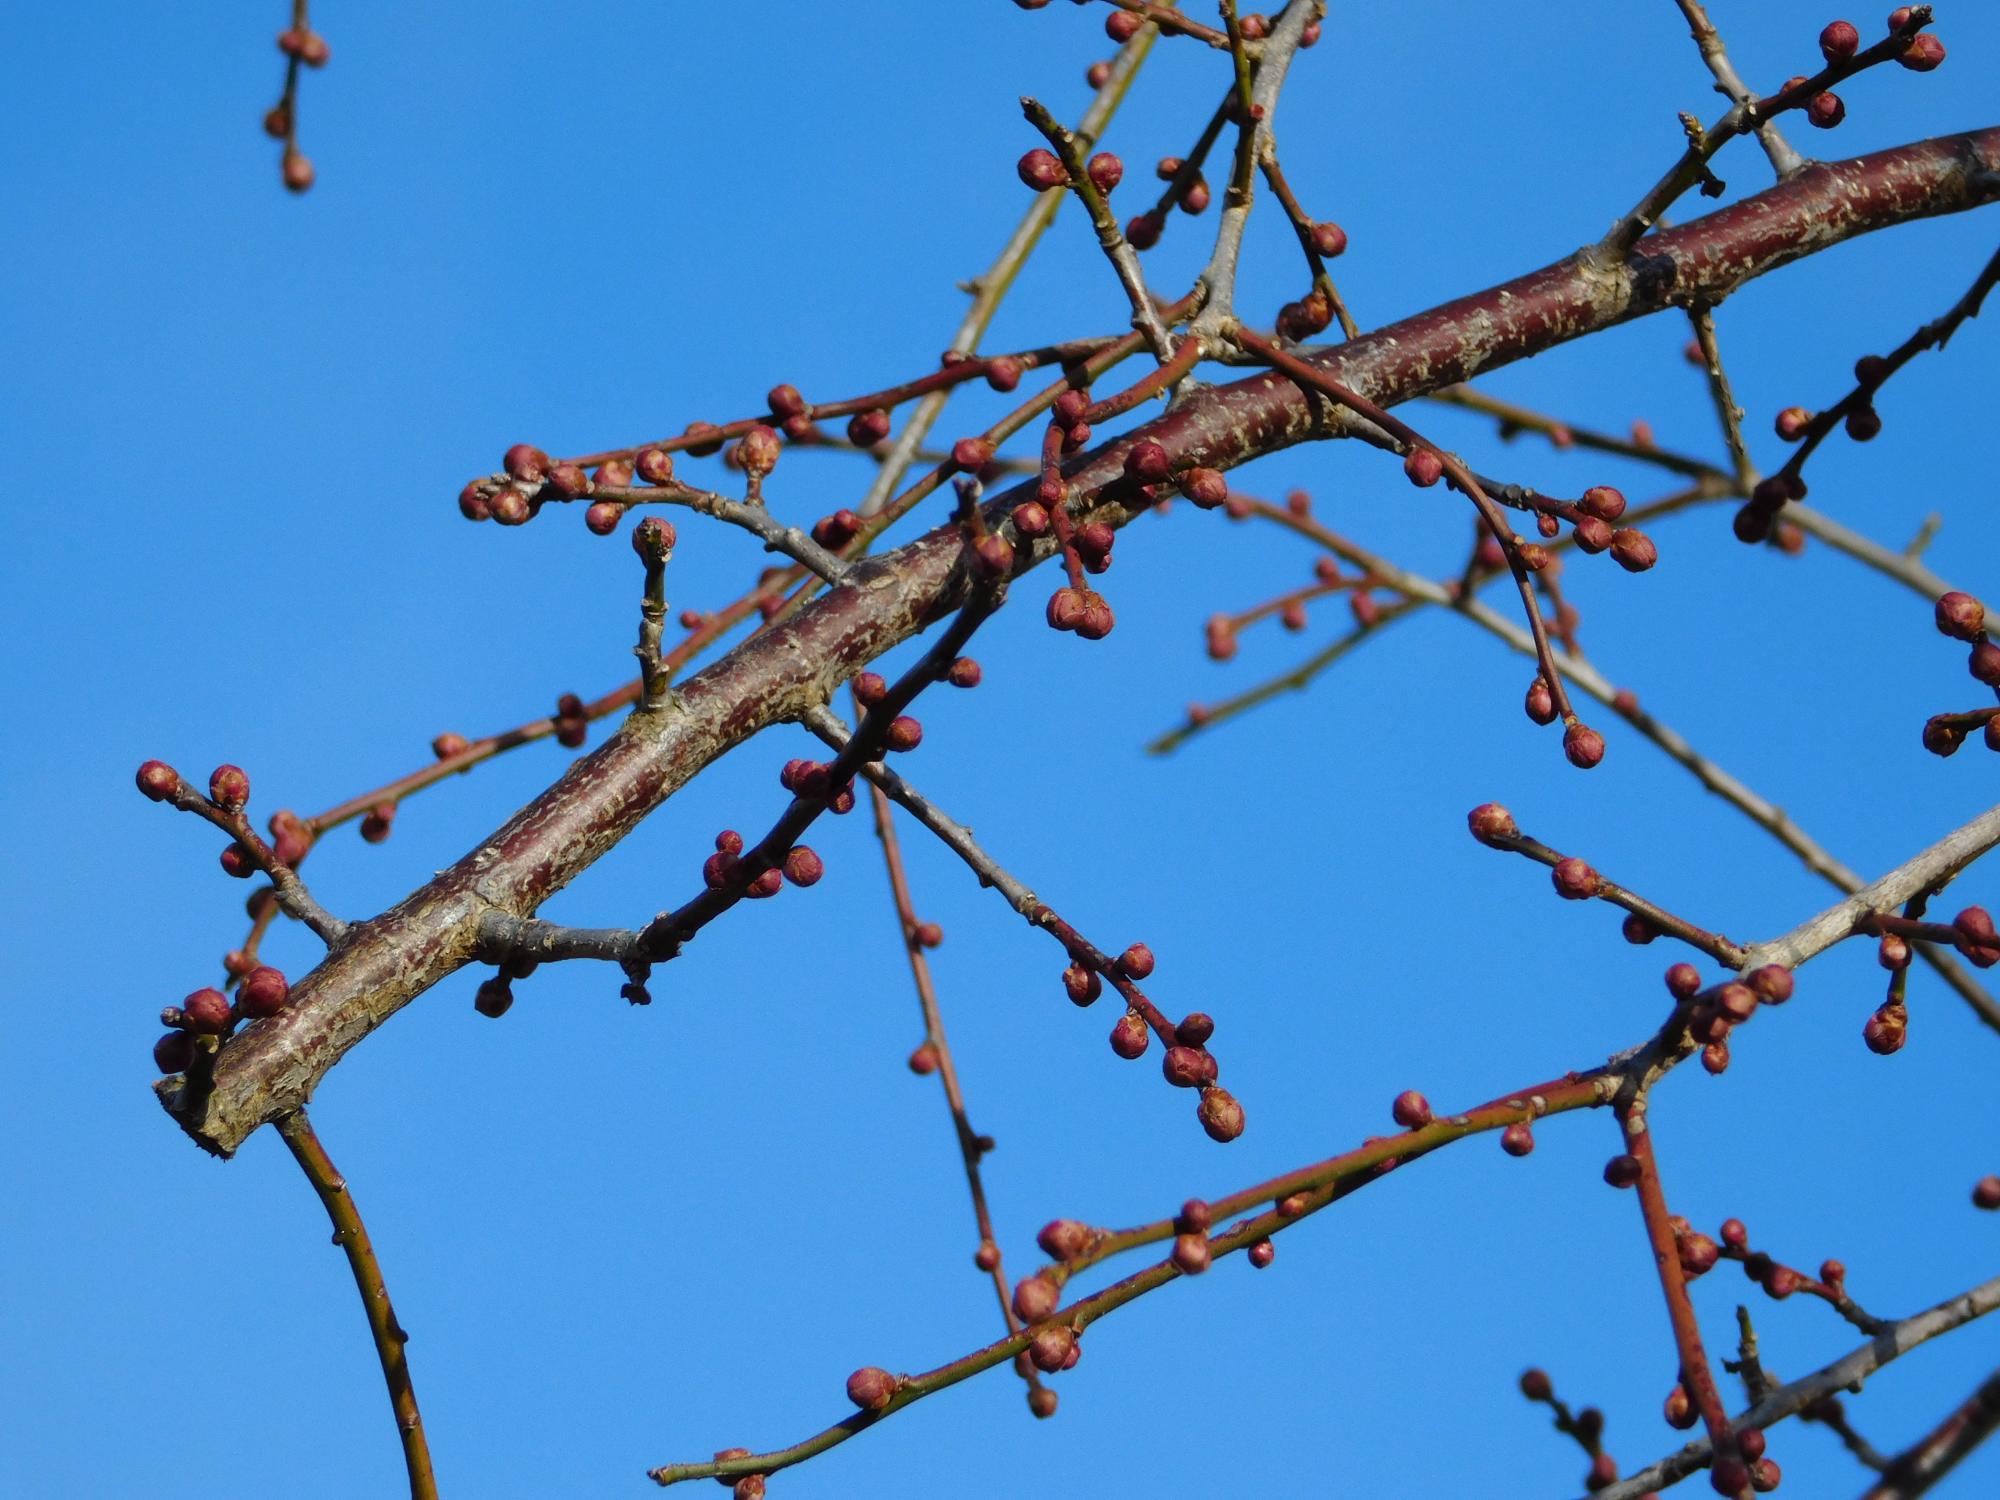 梅見の丘の枝垂れ梅のつぼみの状況です。梅見の丘では、2月中旬から3月上旬が花の見ごろとなります。